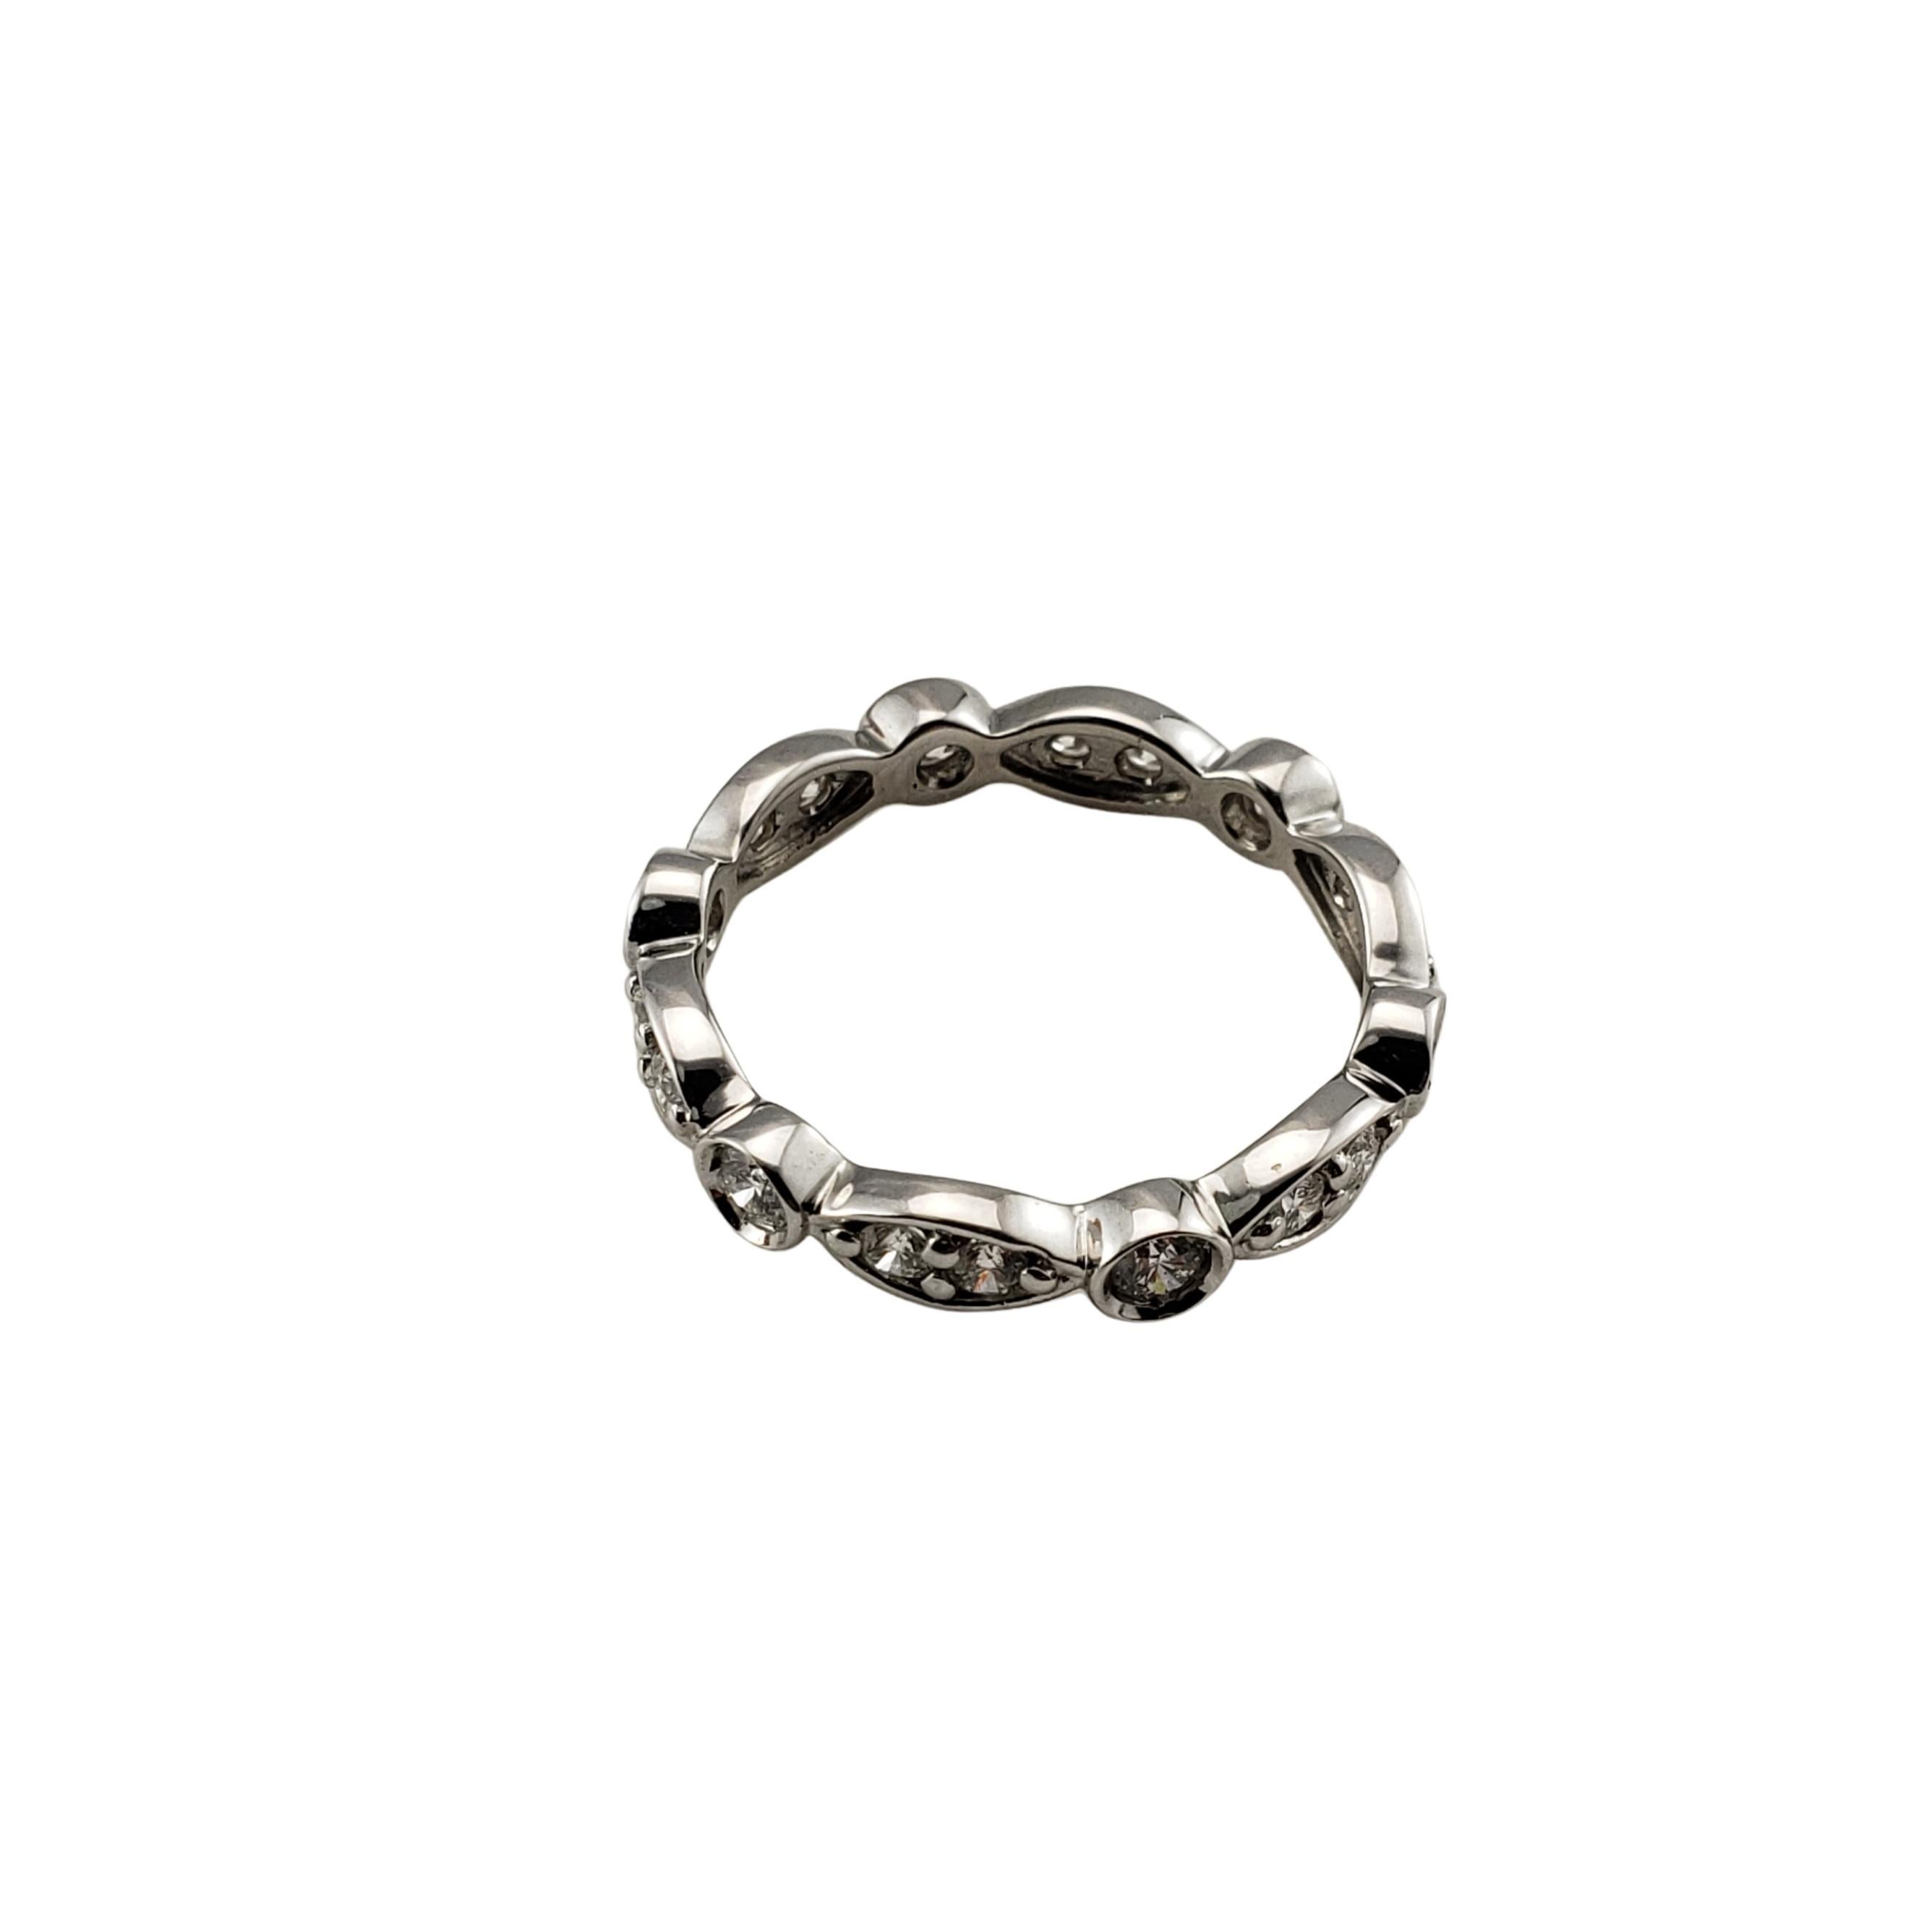 Vintage 14 Karat White Gold Diamond Wedding Band Ring Size 6.5-

Ce bracelet étincelant est orné de 18 diamants ronds de taille brillante sertis dans de l'or blanc 14 carats magnifiquement détaillé. Largeur : 3 mm.

Poids total approximatif des